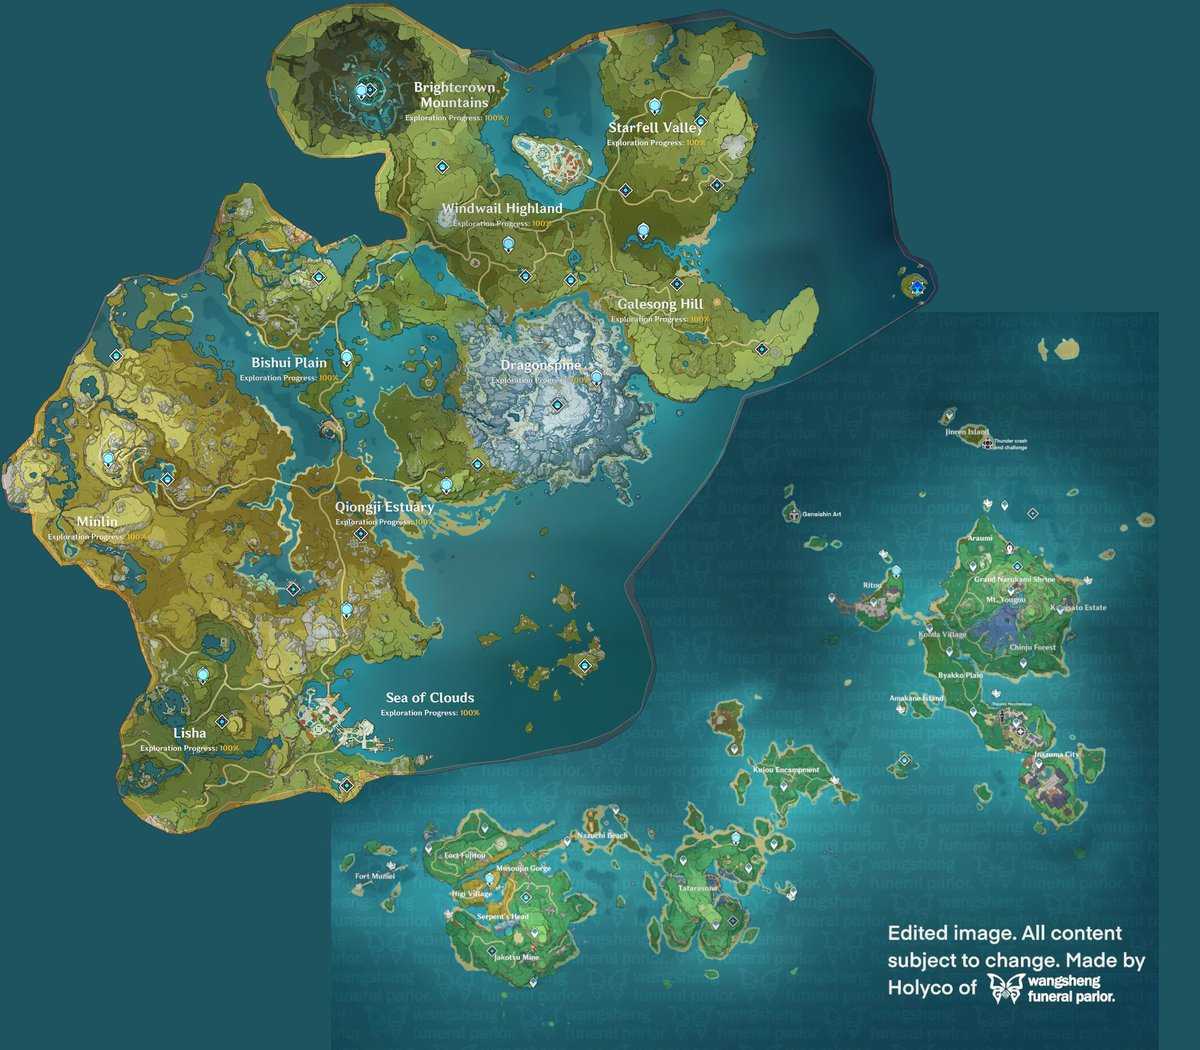 Genshin interactive world map: для чего нужна интерактивная карта и как ей пользоваться